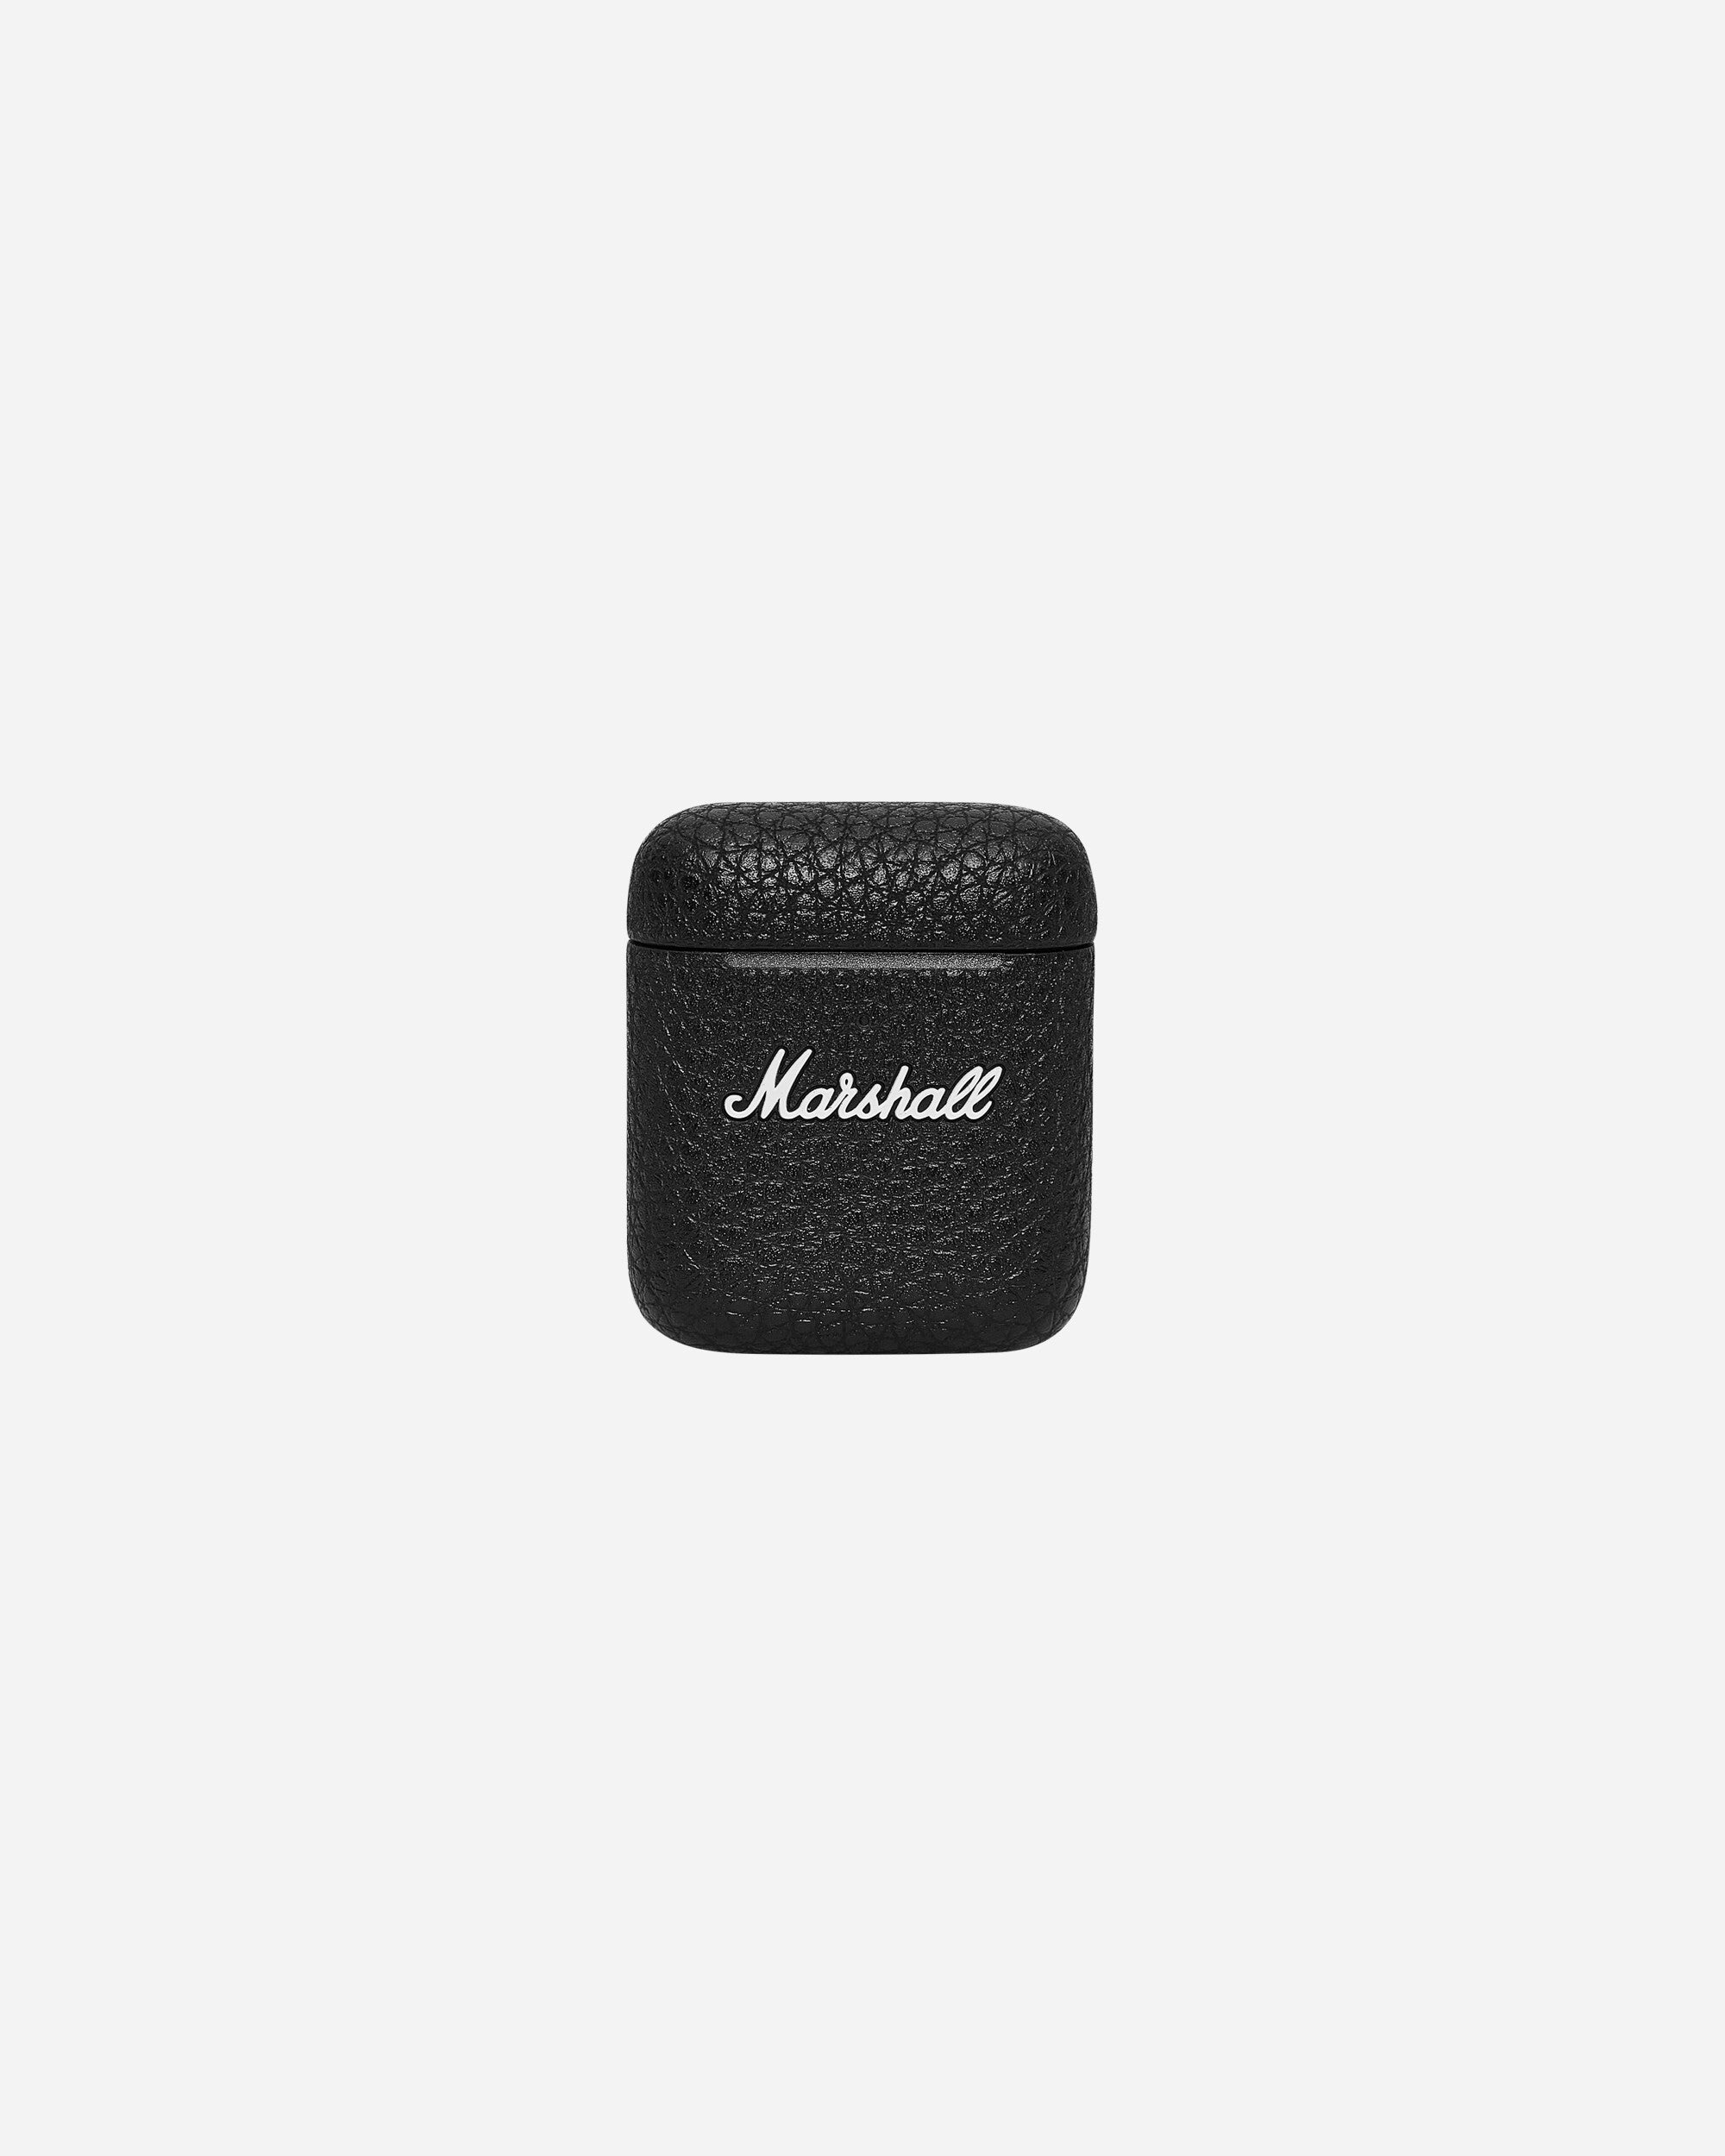 Marshall Marshall Minor Iii Black Tech and Audio Headphones 1005983 001